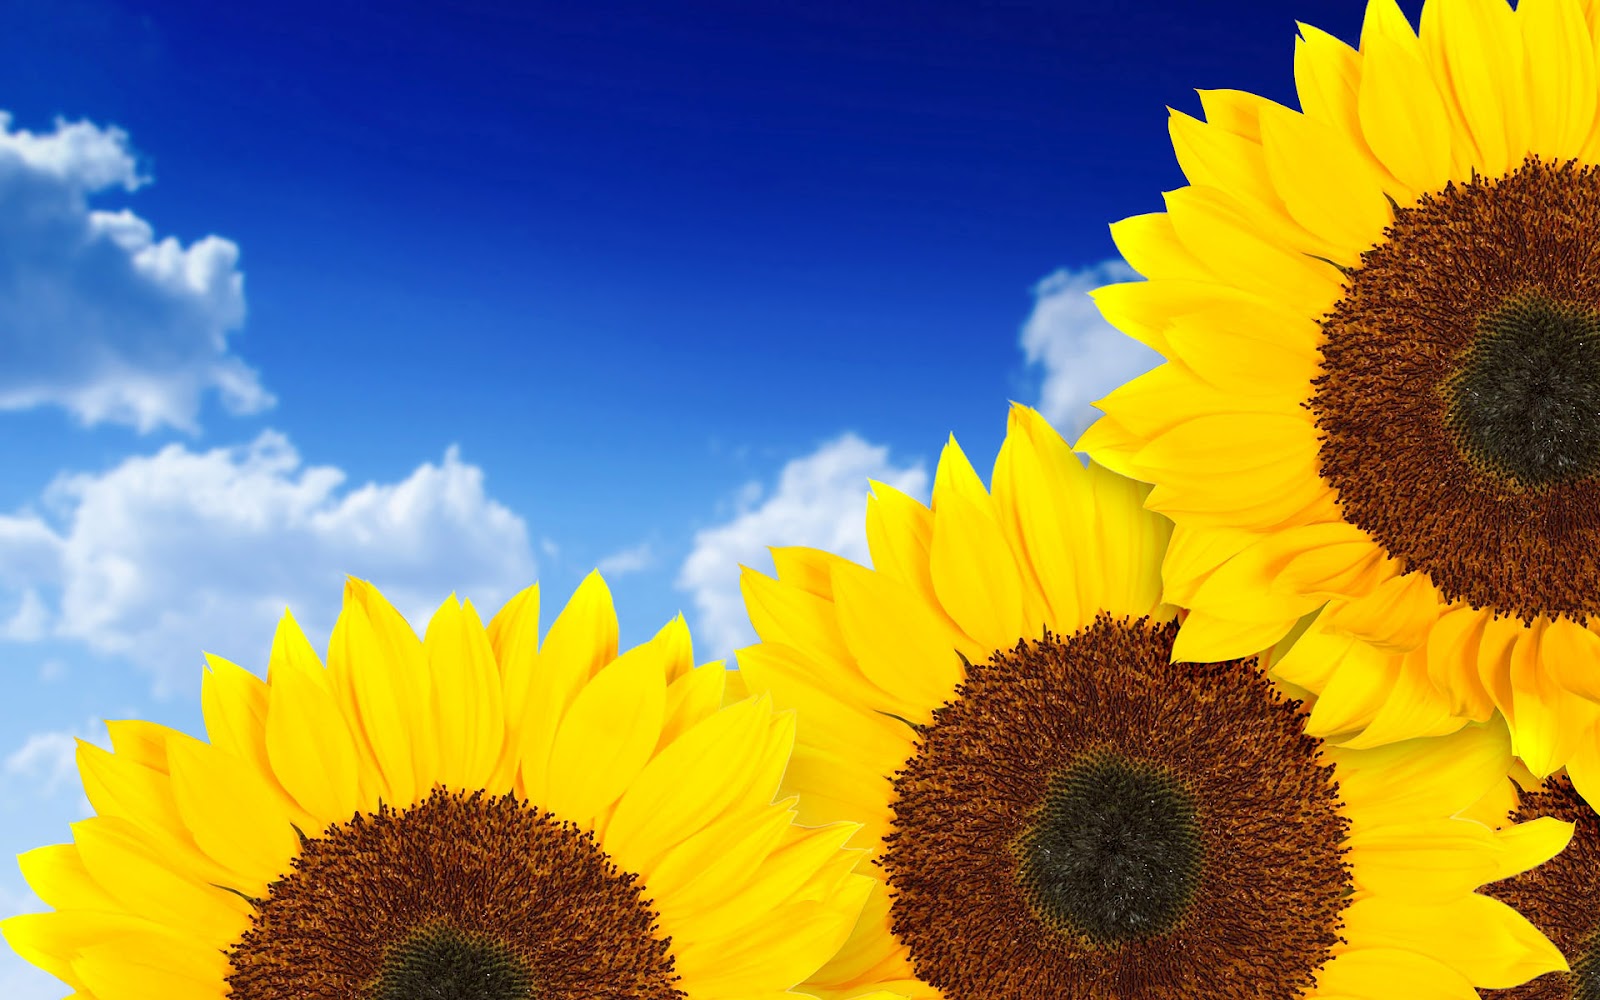 sunflower wallpaper,sunflower,flower,sky,yellow,sunflower